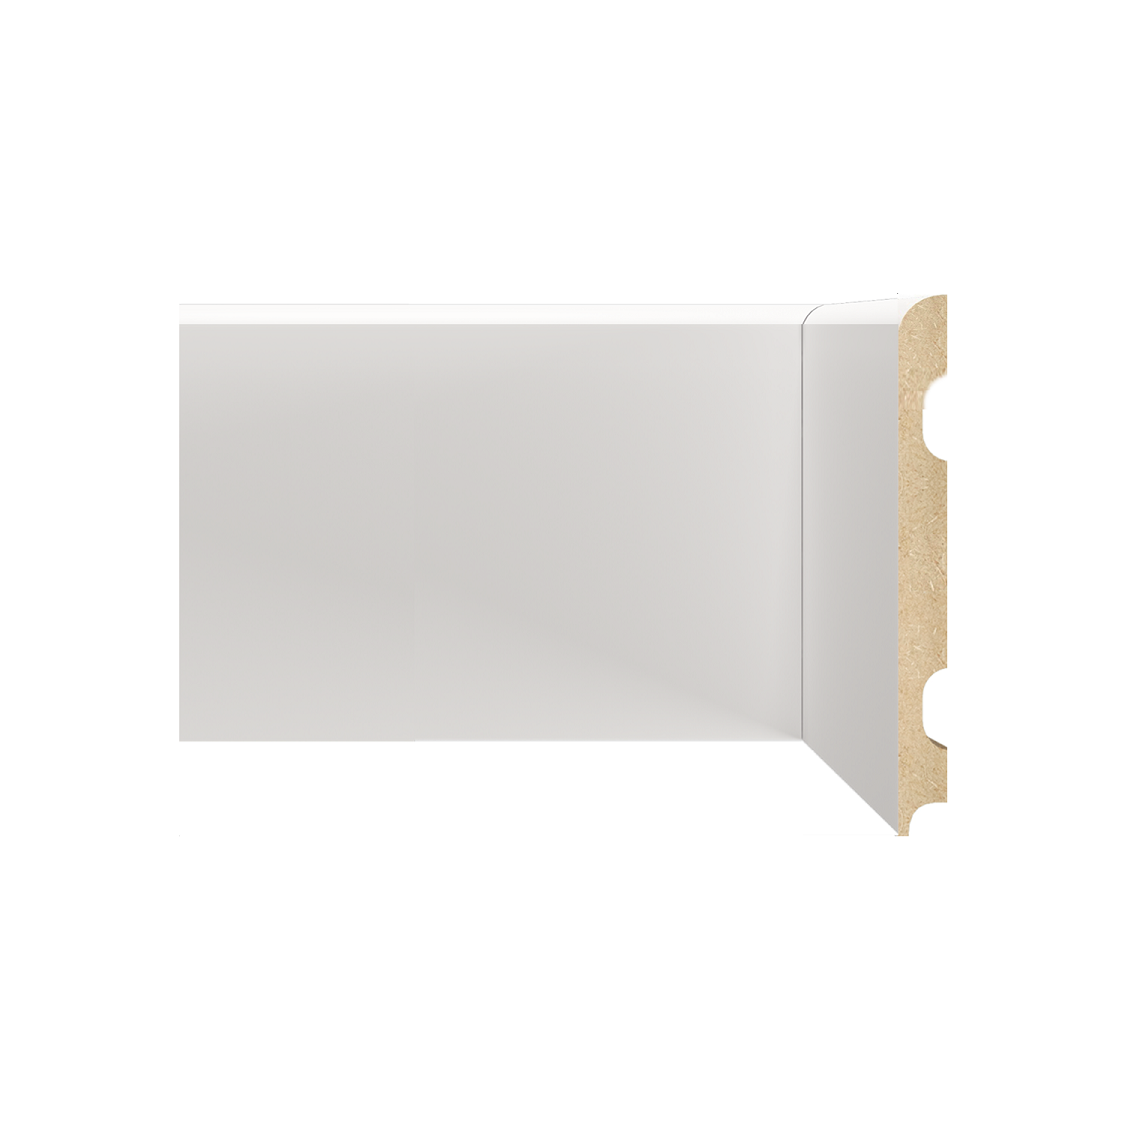 Rodapé Branco em MDF 15cm sem friso -curvo - preço por barra com 15mm de espessura e 2,40 metros lineares * - Imagem 1